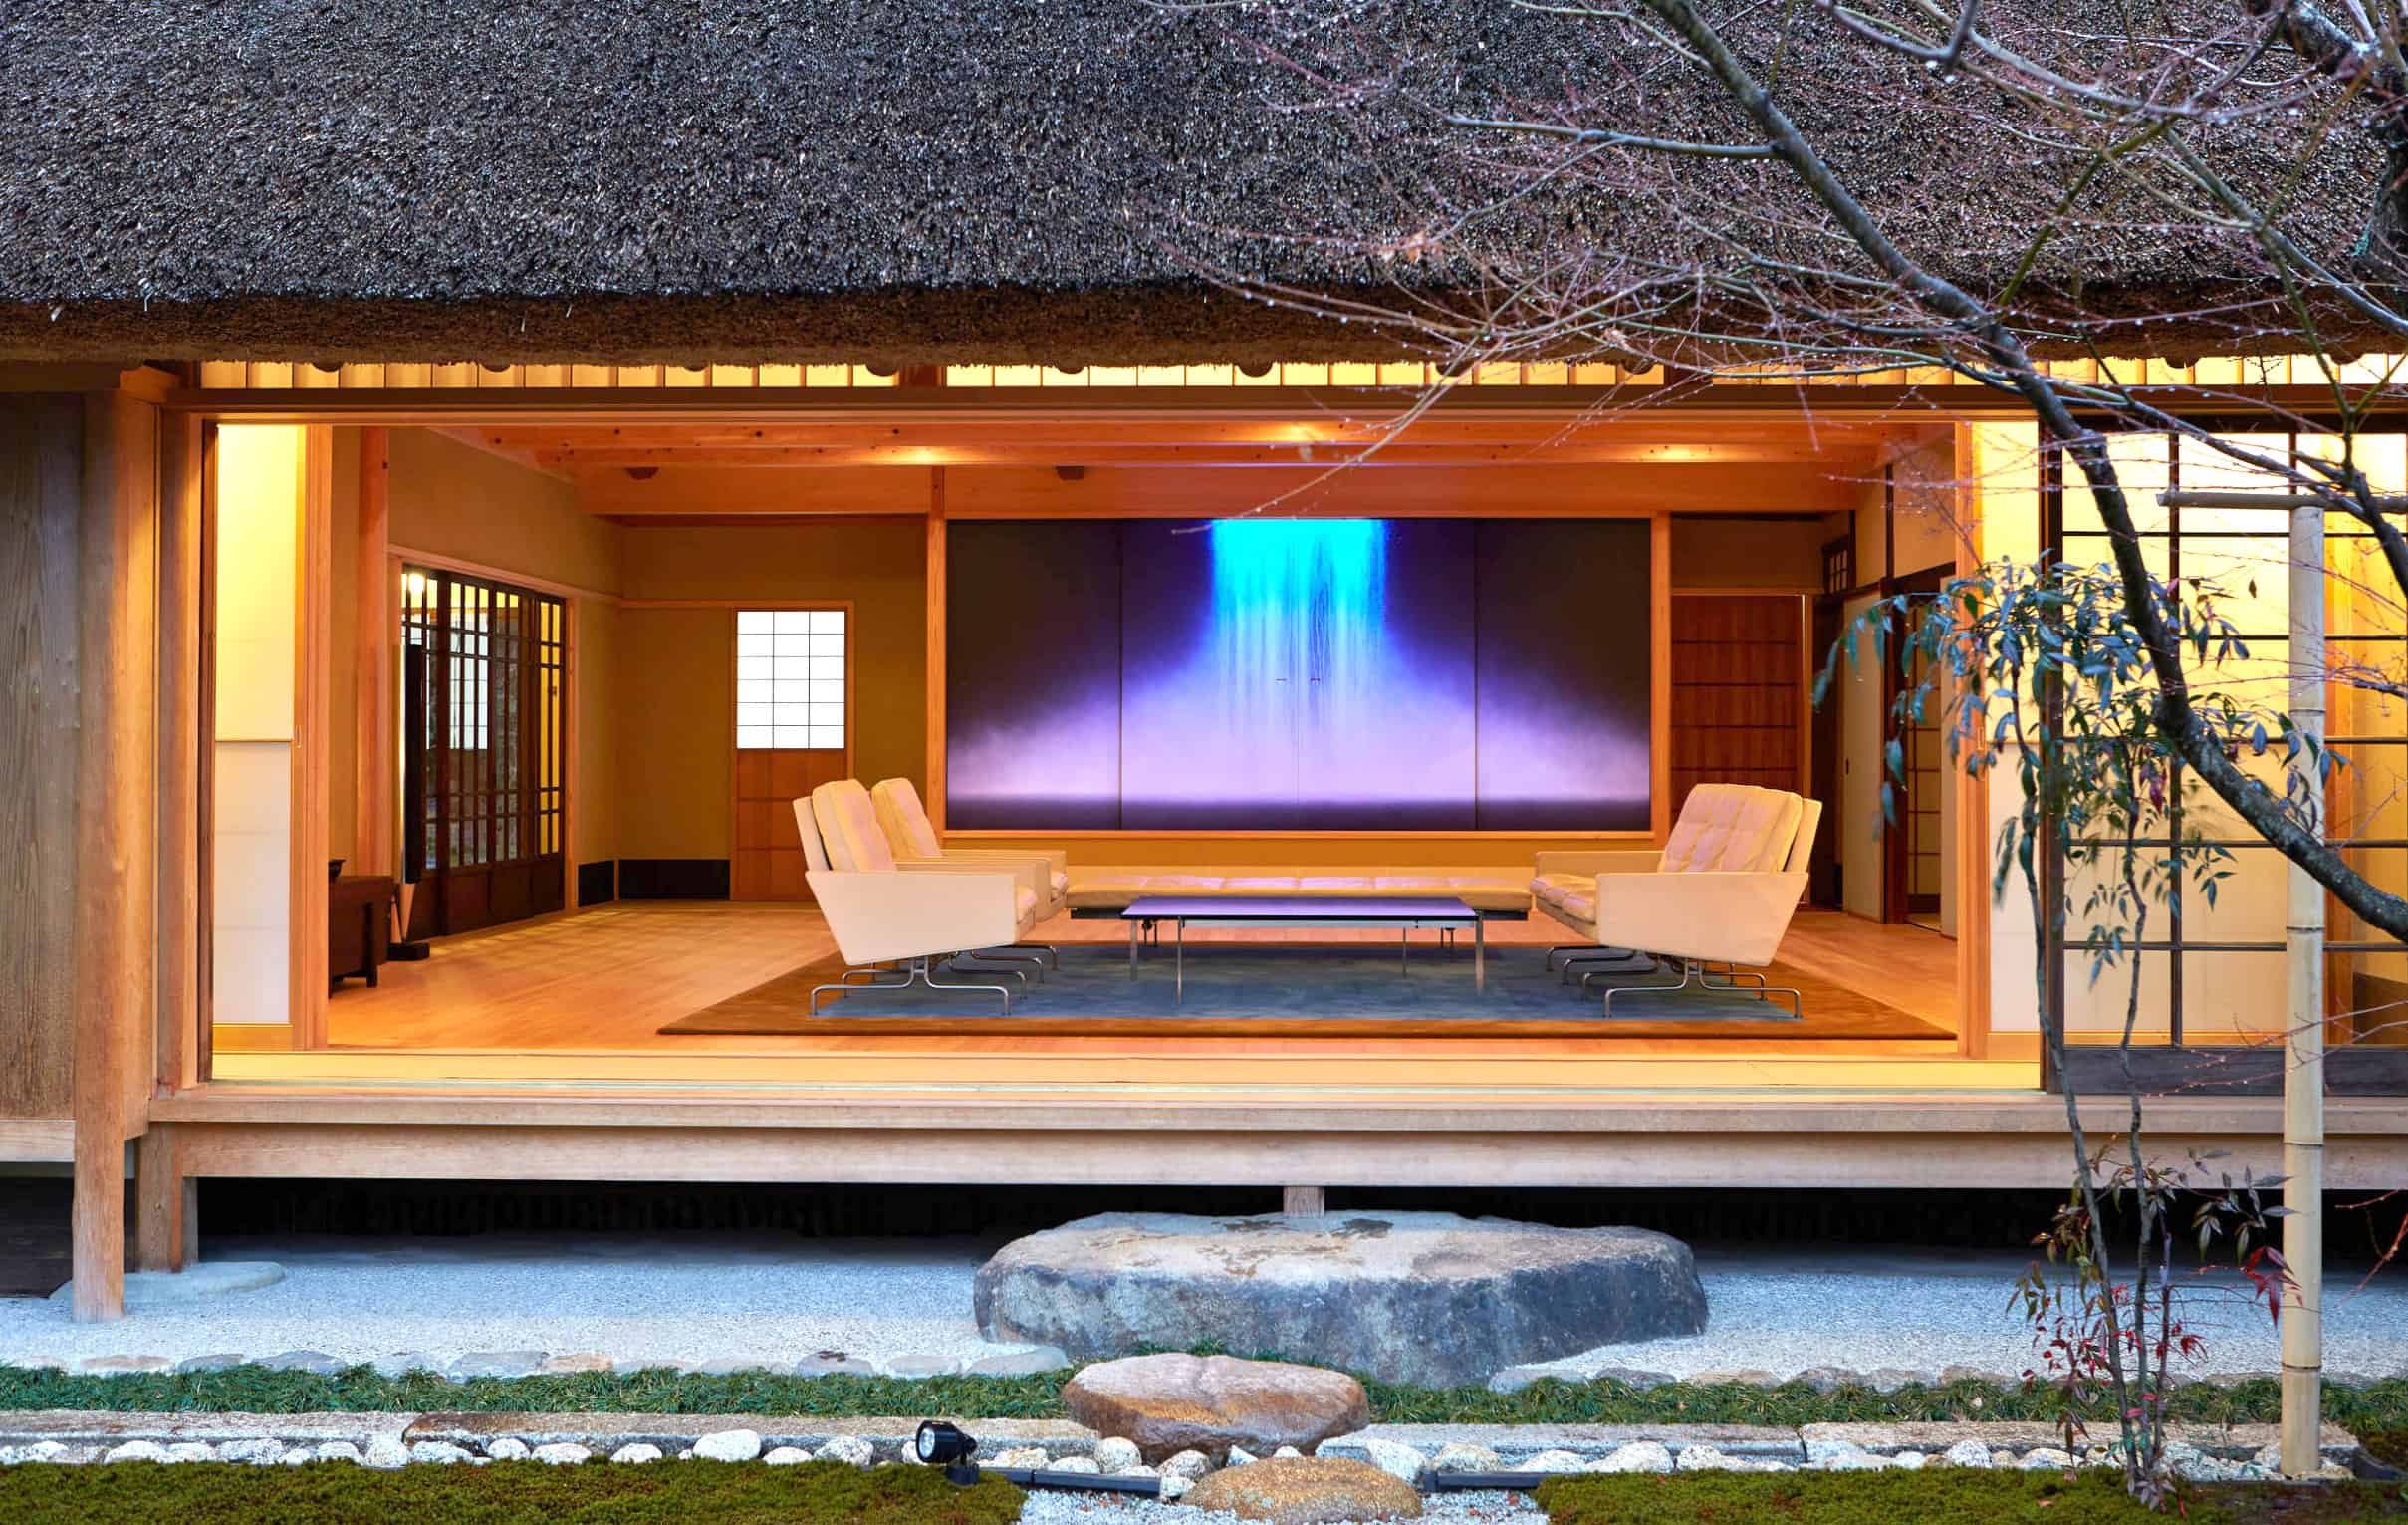 Japanese Home Design Ideas - Houzz Design Ideas